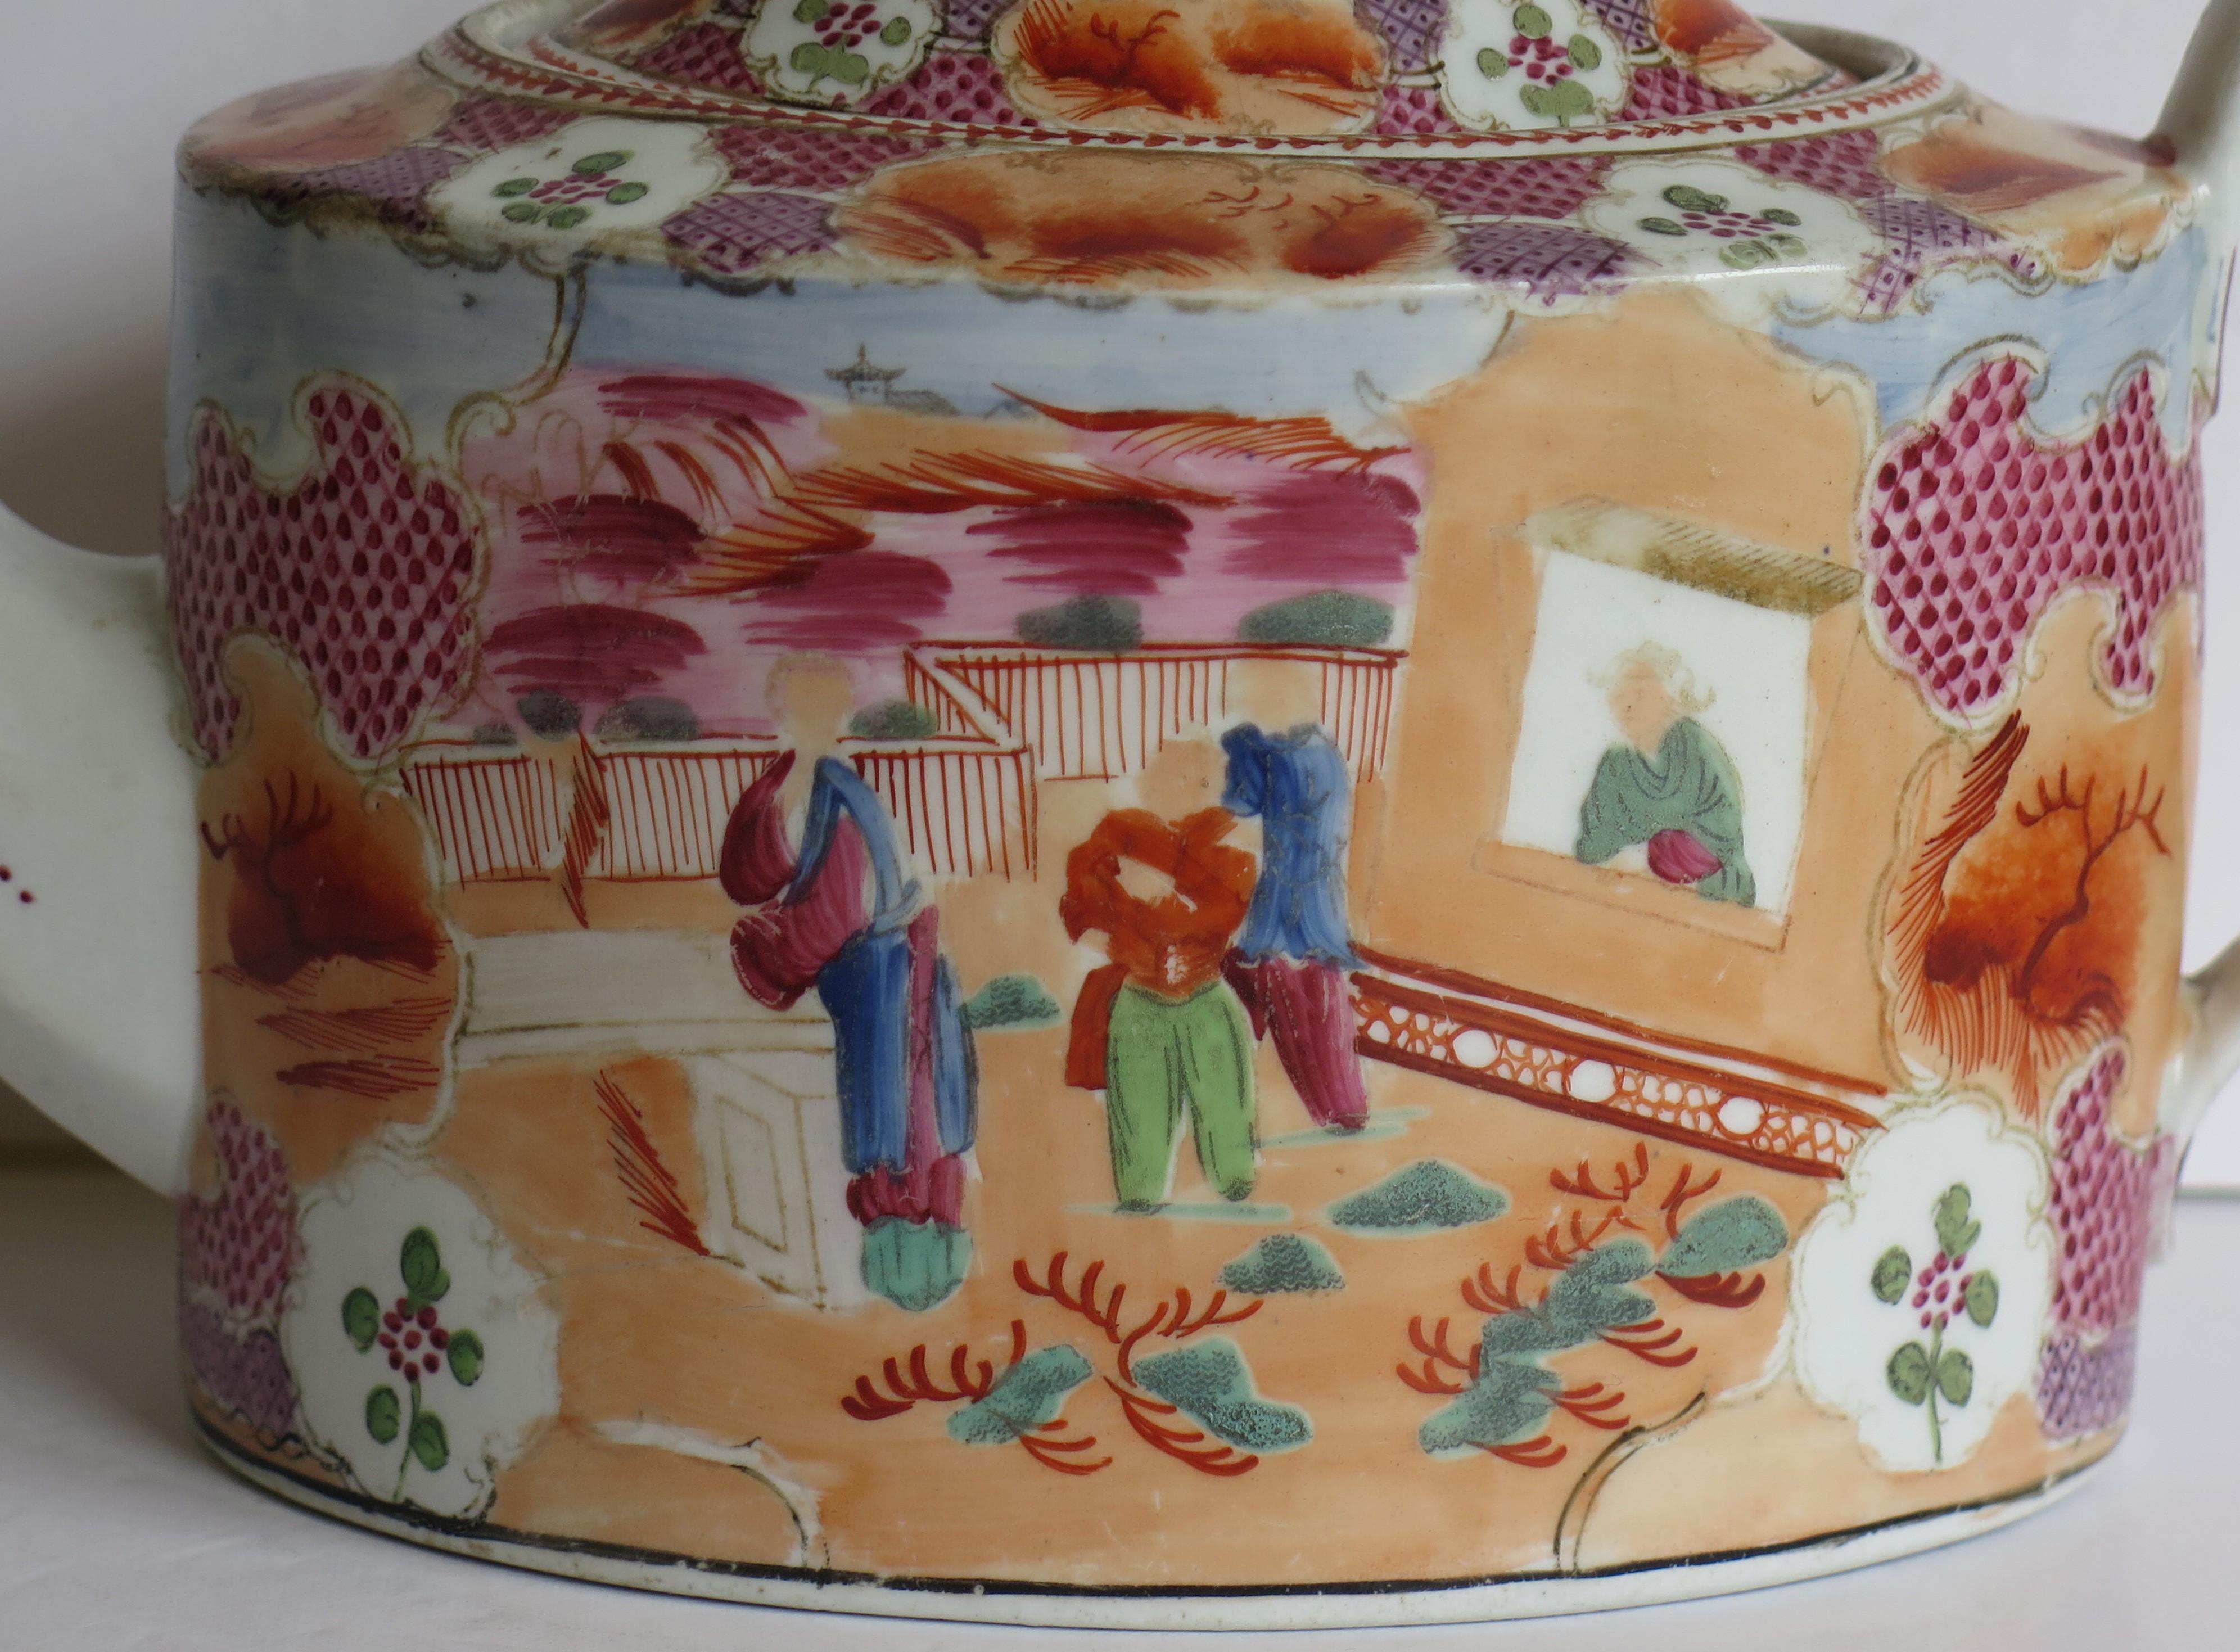 Dies ist eine harte Paste Porzellan Teekanne und Deckel von New Hall aus sehr frühen 19. Jahrhundert, George 111. Periode, ca. 1800 / 1805.

Die Teekanne ist gut getöpfert, hat eine ovale Form und einen hohen Henkel mit Öse. 

Die Dekoration ist